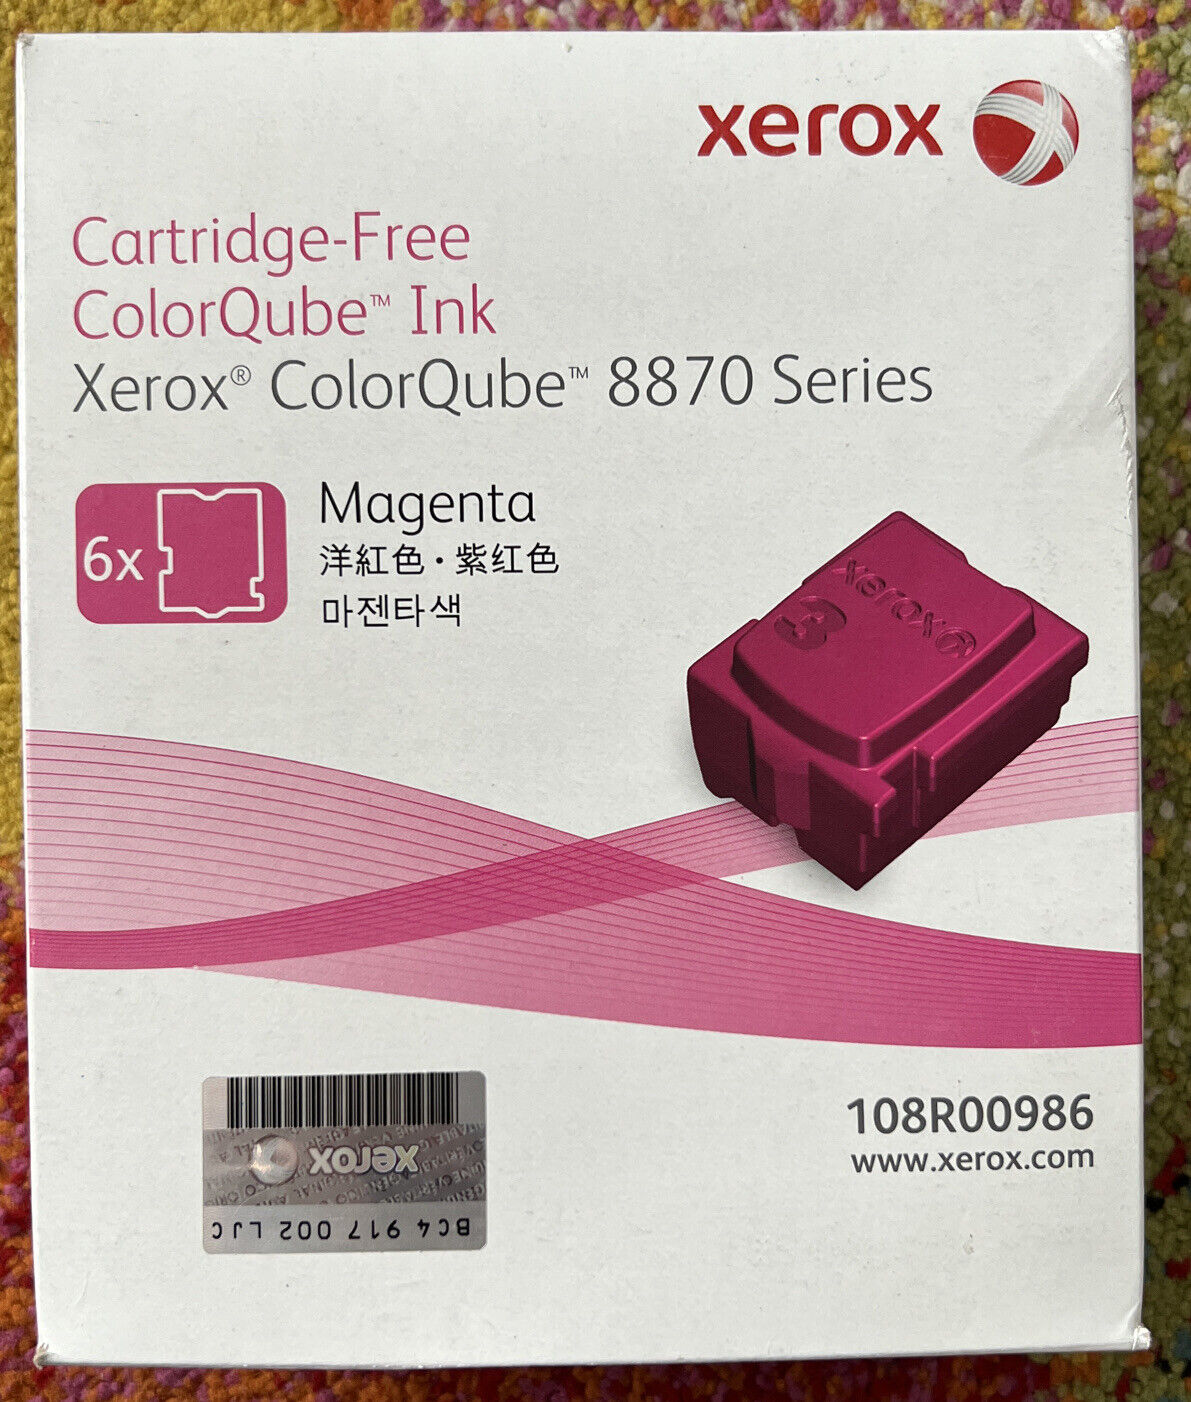 Fuji Xerox 108R00986 MAGENTA - Cartridge-Free ColorQube 8870 - 4x Sticks Only